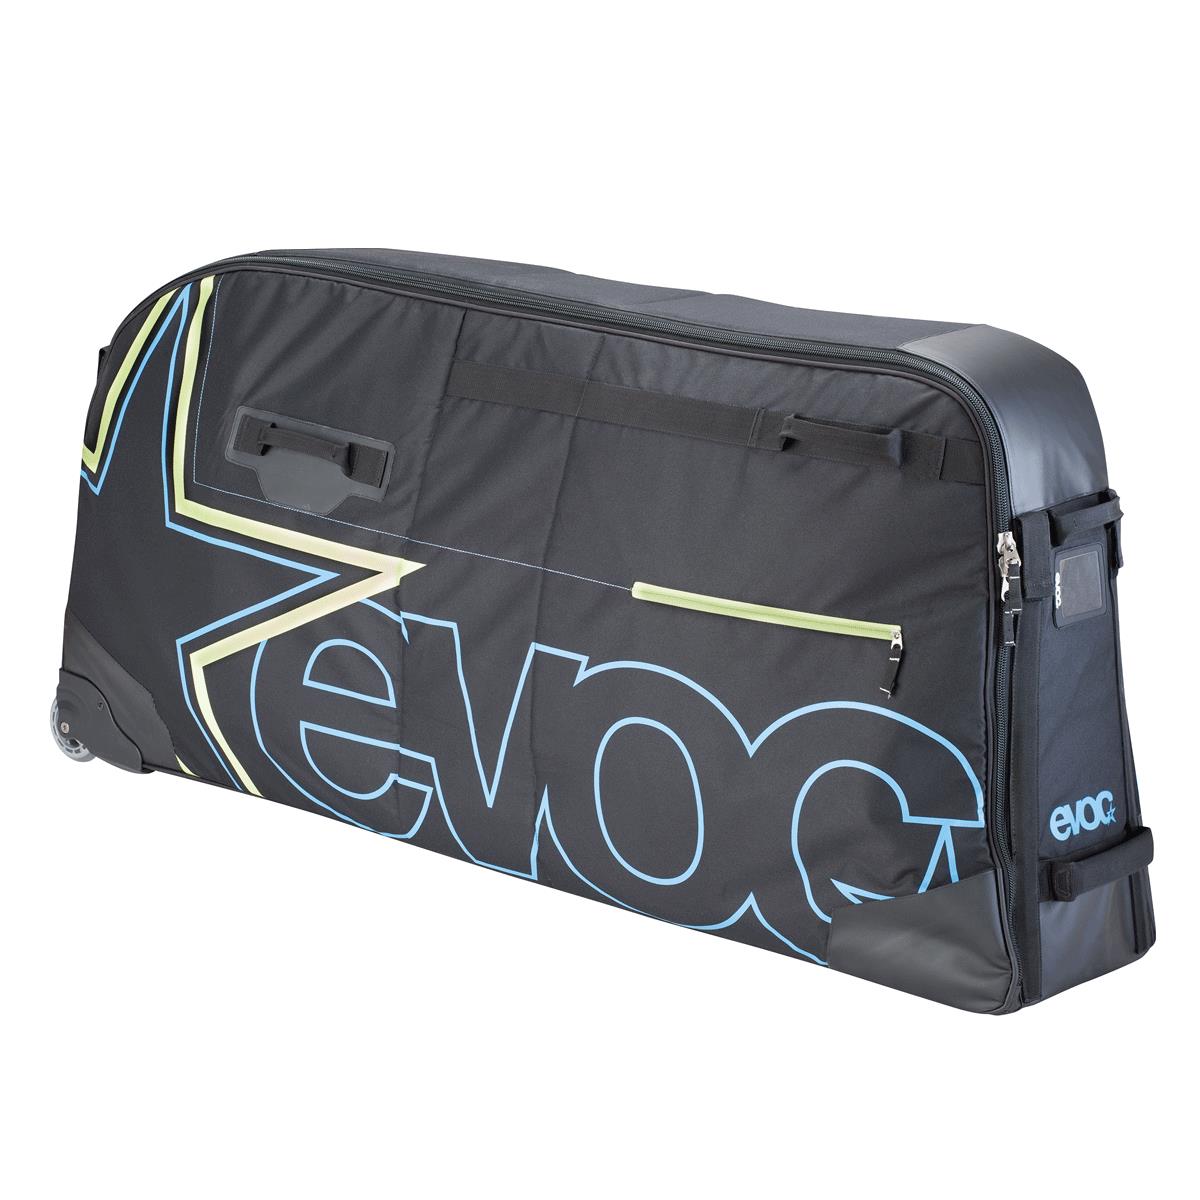 Evoc Bmx Travel Bag